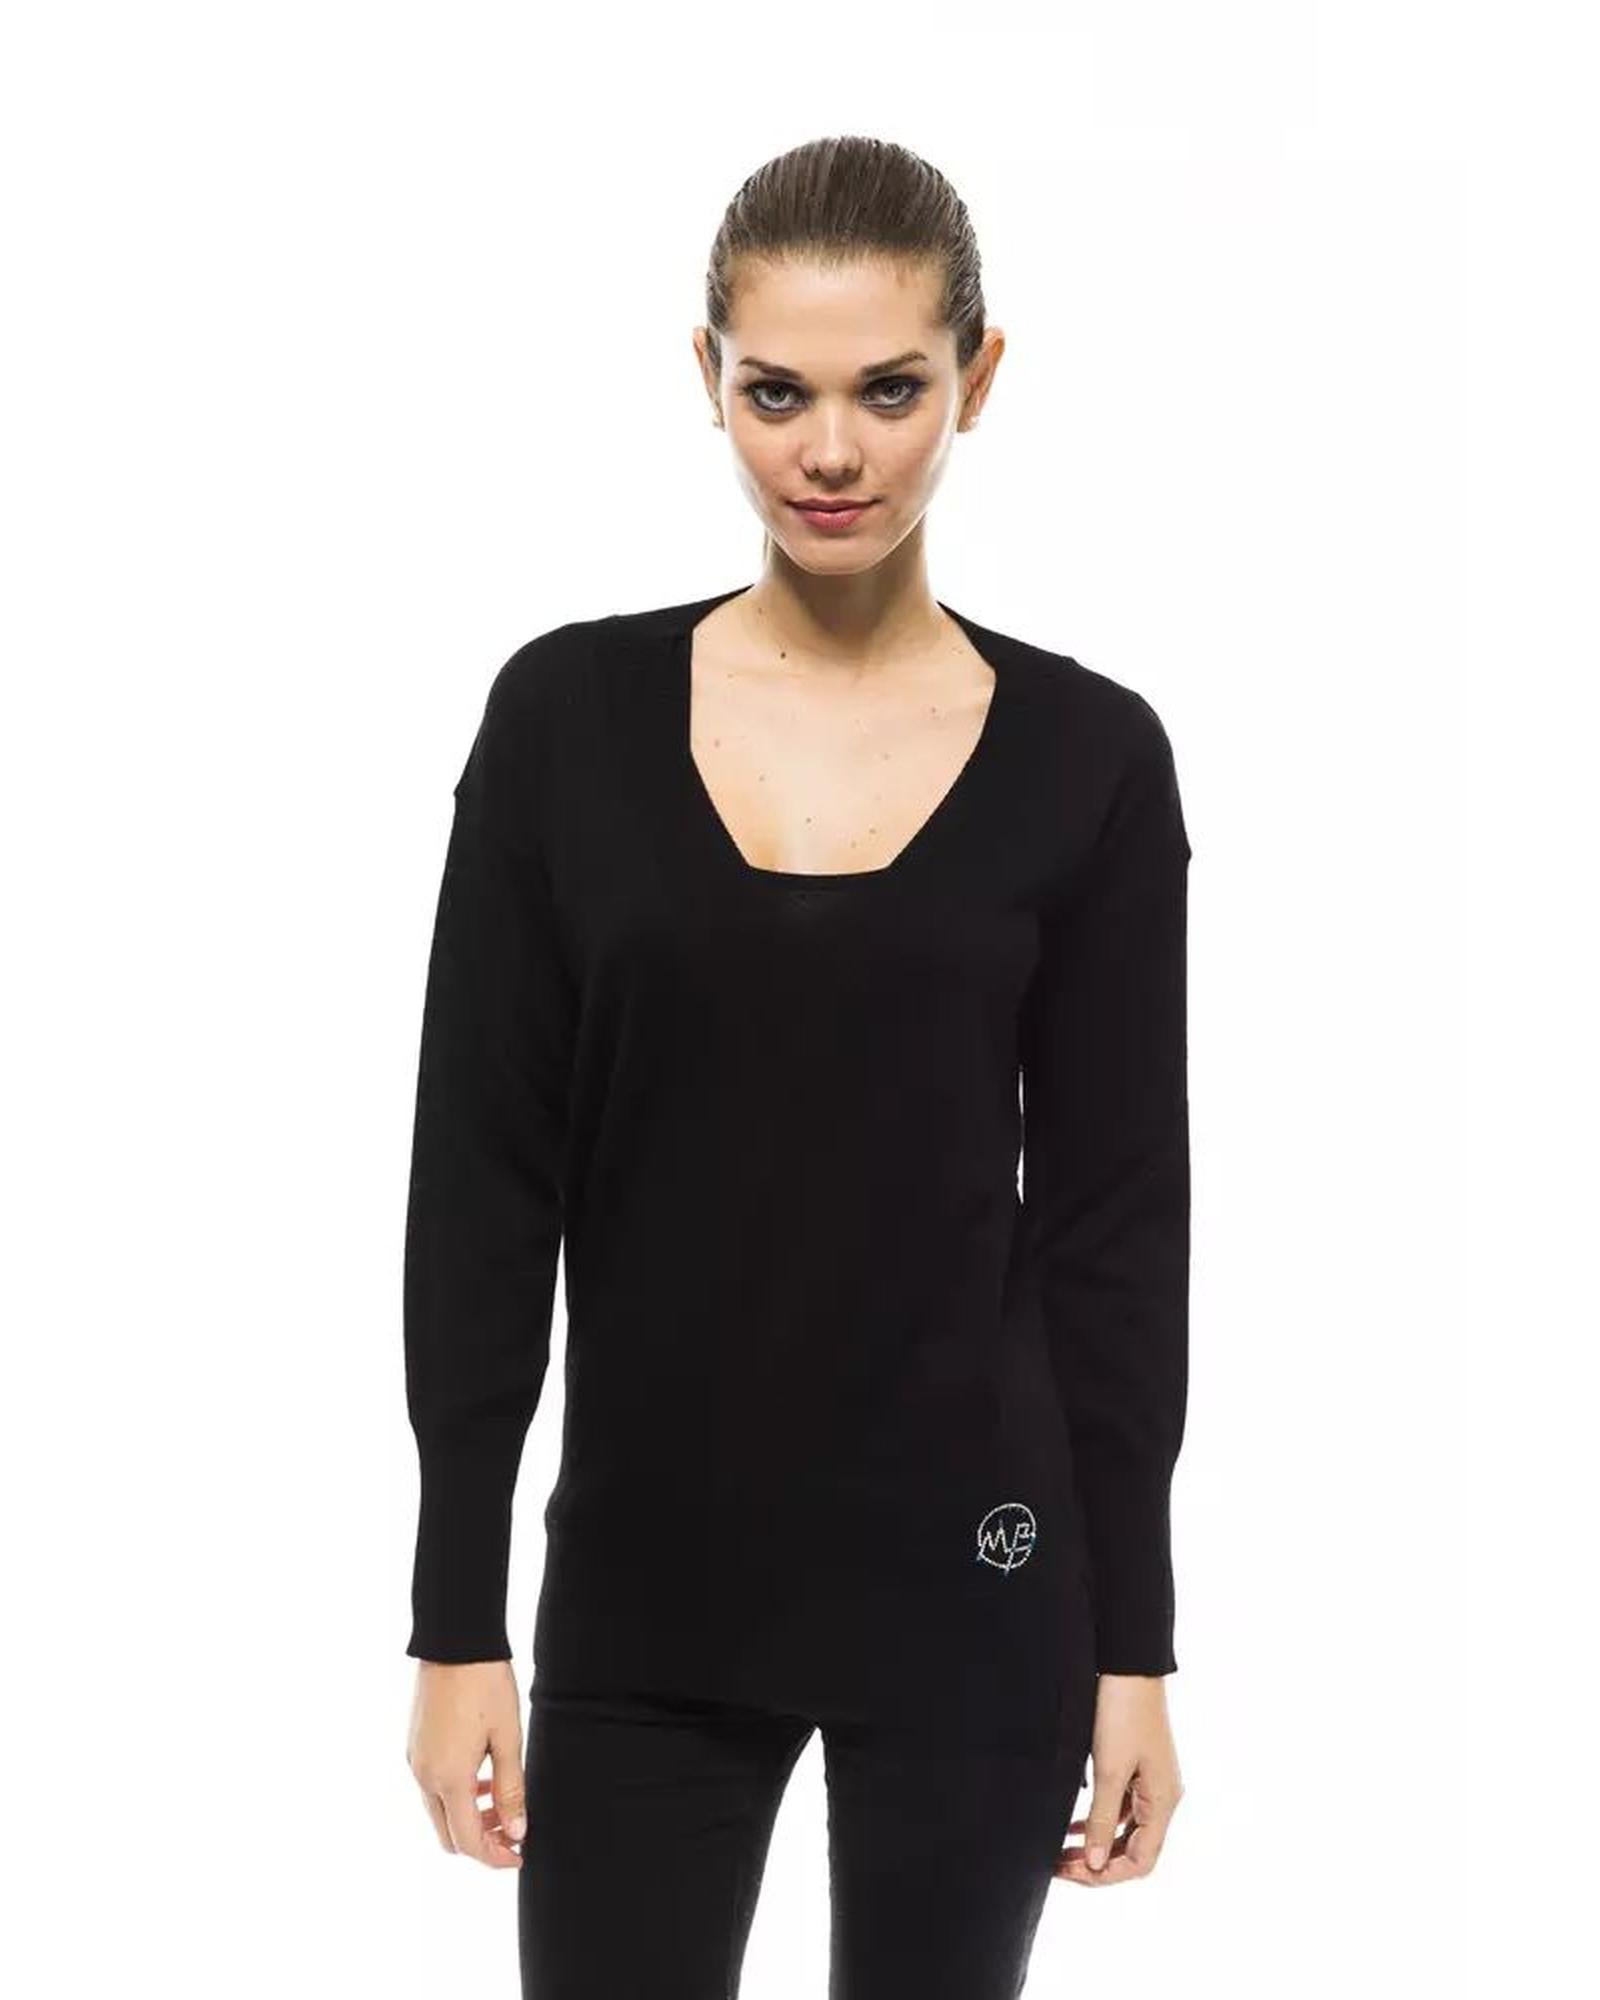 Women's Black Wool Sweater - 46 IT